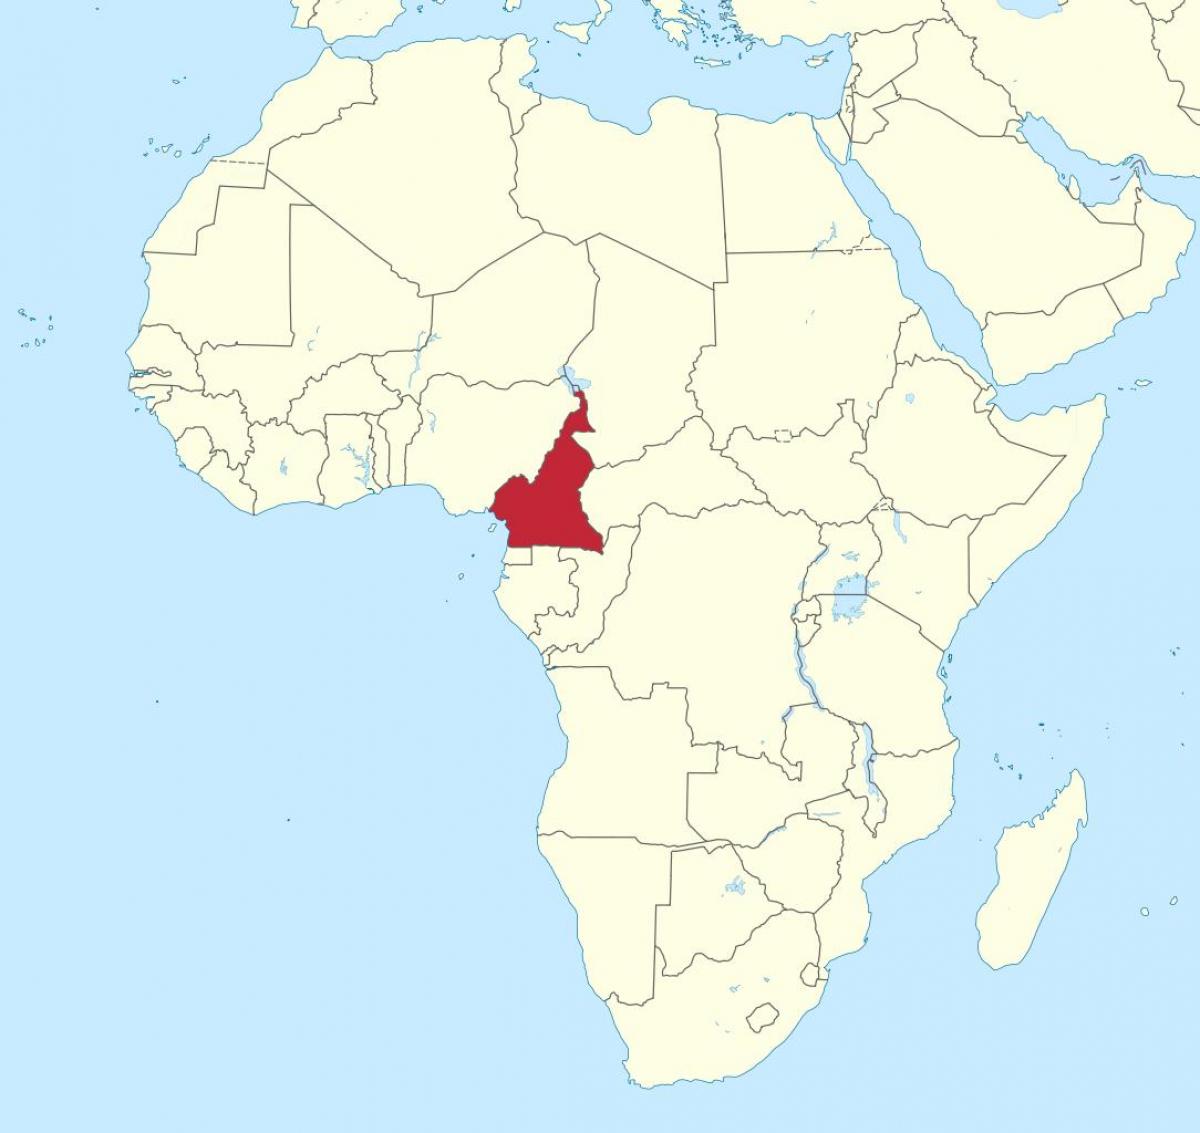 Kart over Kamerun vest-afrika